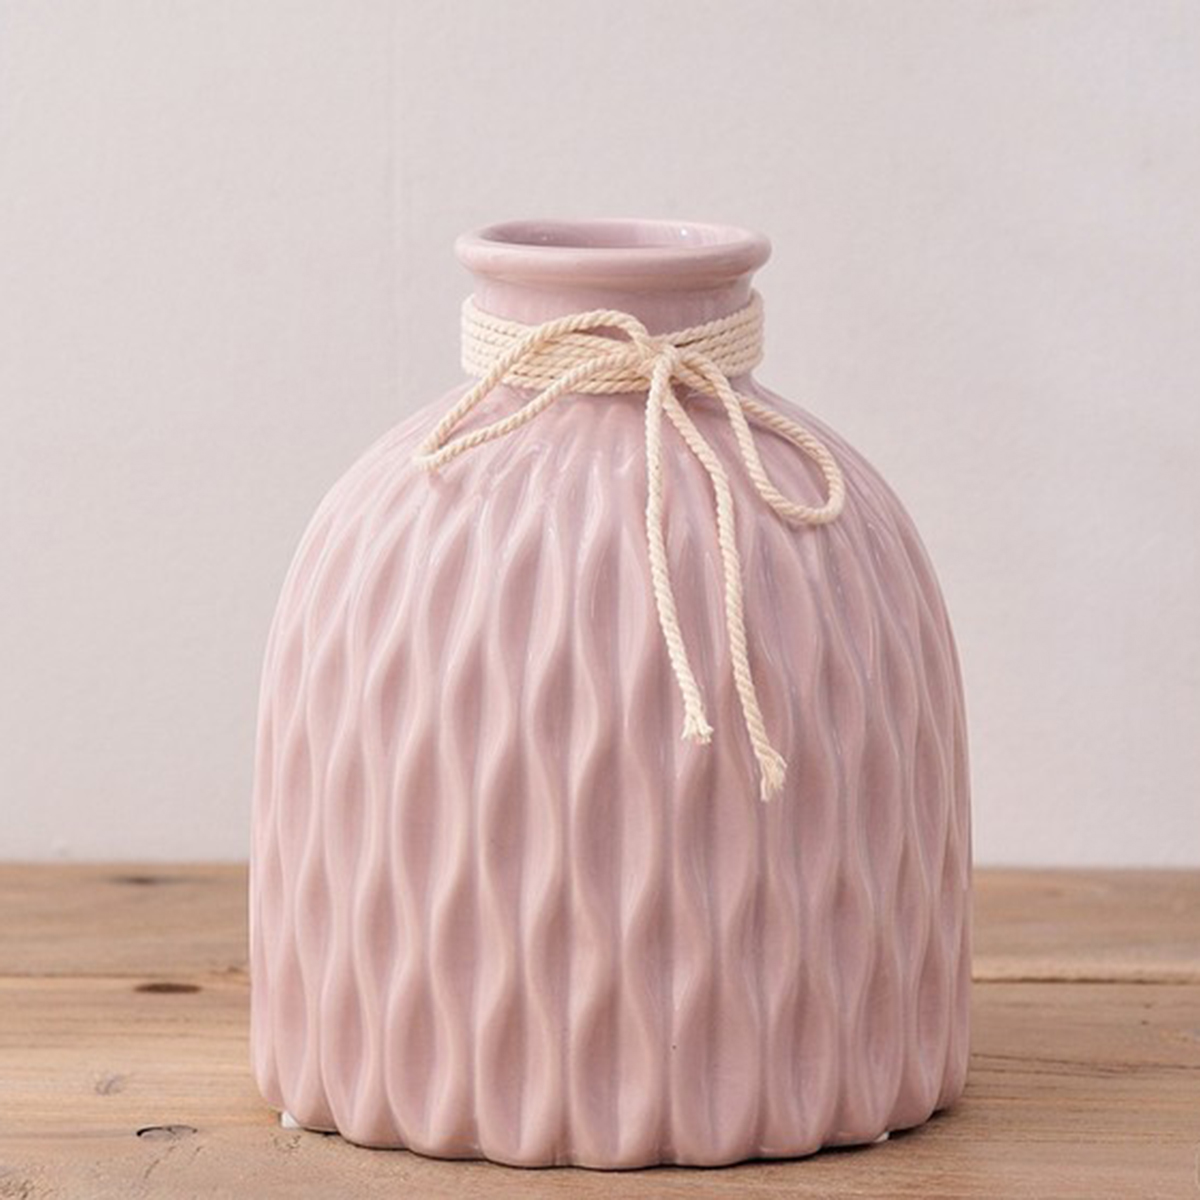 

Modern Geometric Ceramic Vase Tabletop Flower Pots Home Office Decor Gift